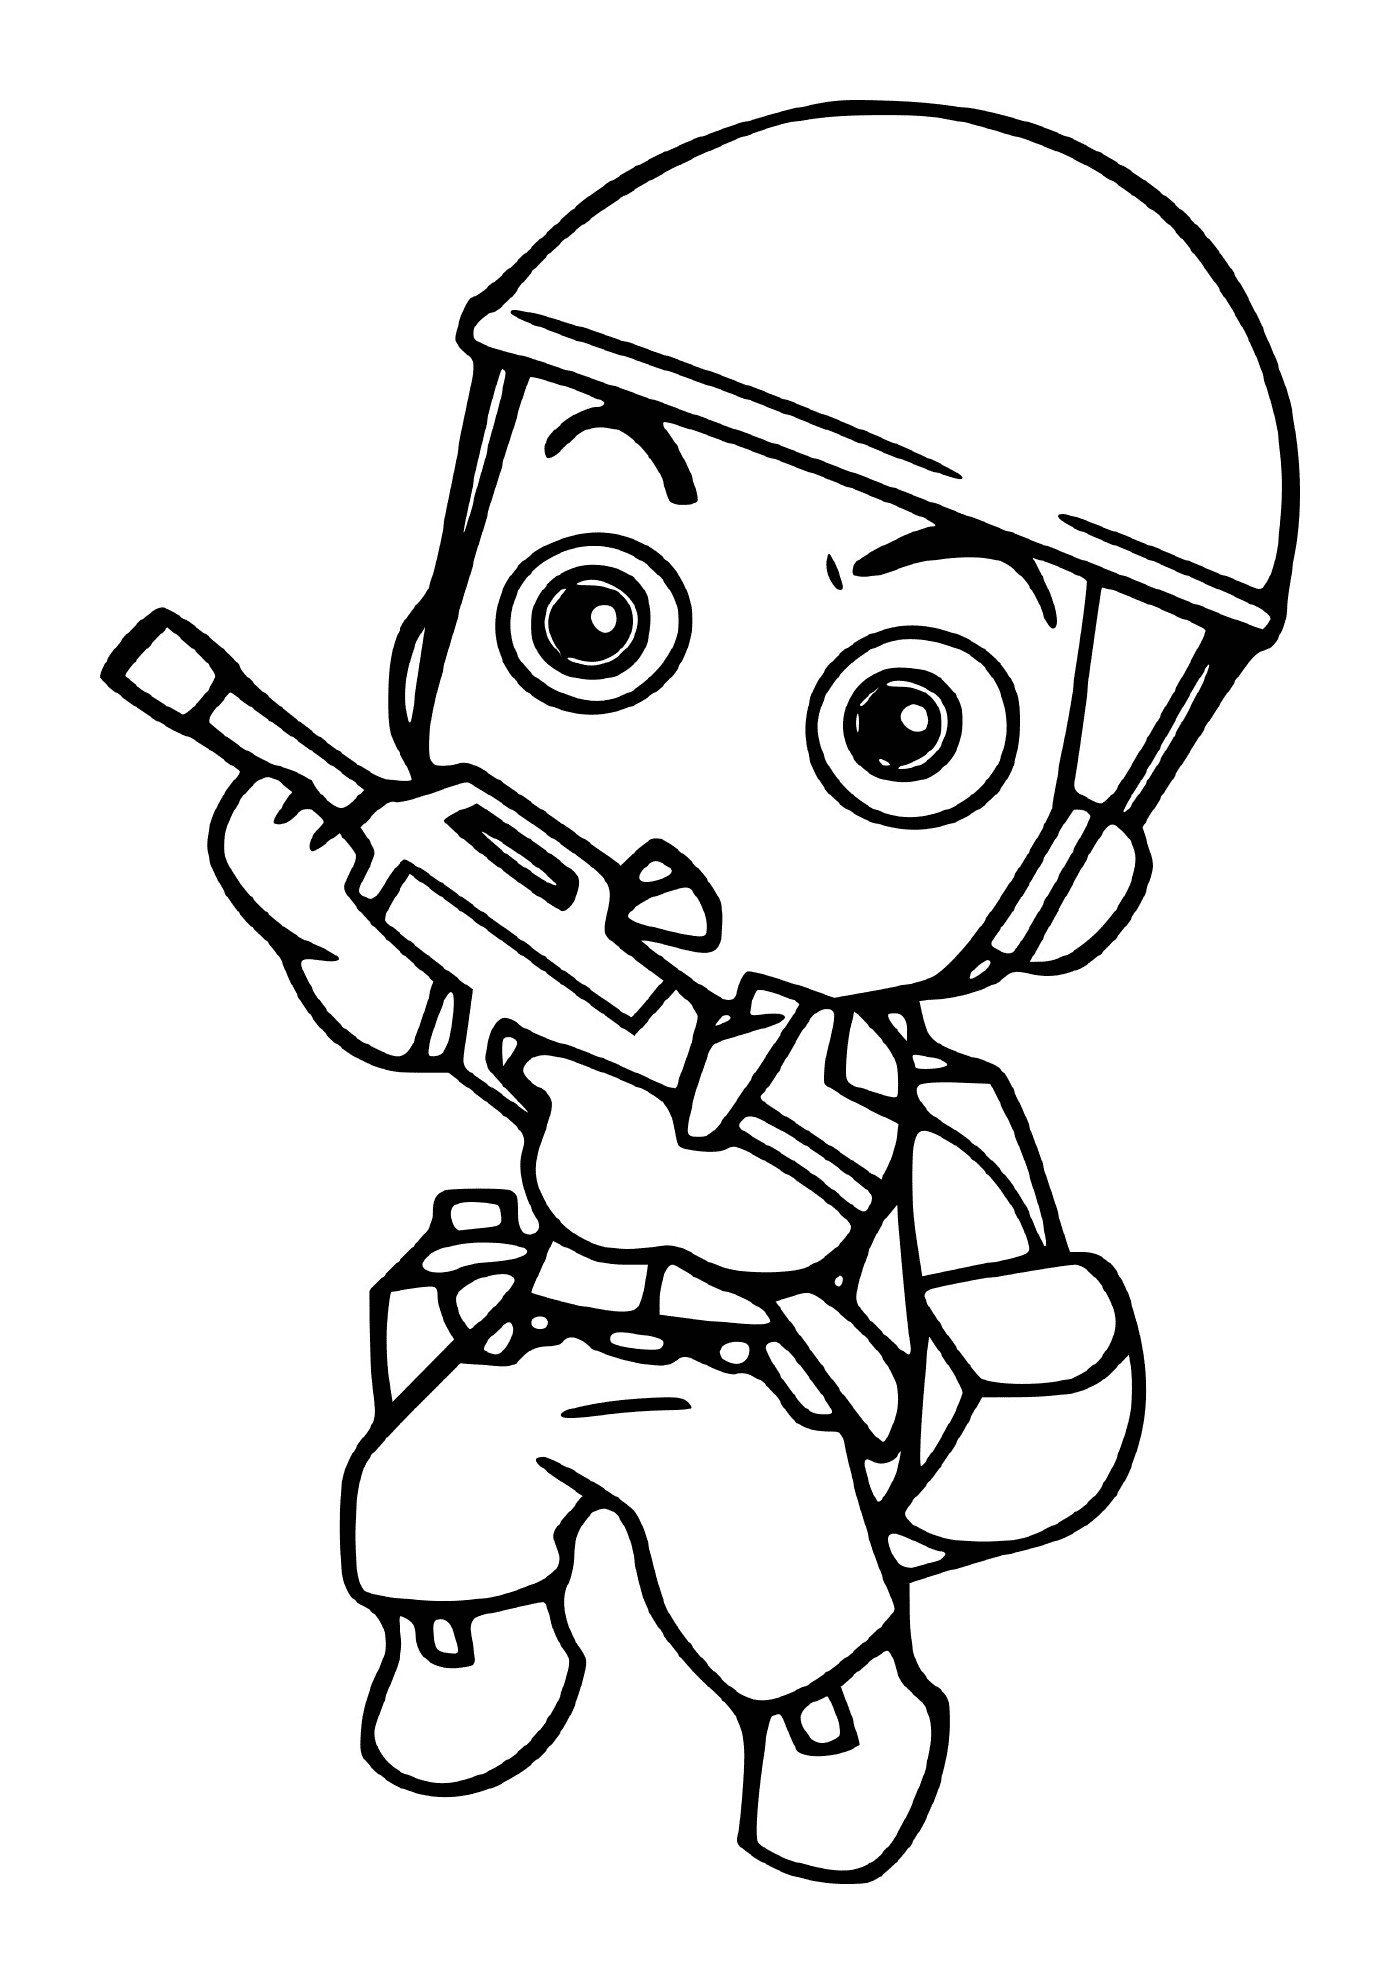  Mini soldado militar com arma: um homem segurando uma chave de fenda 